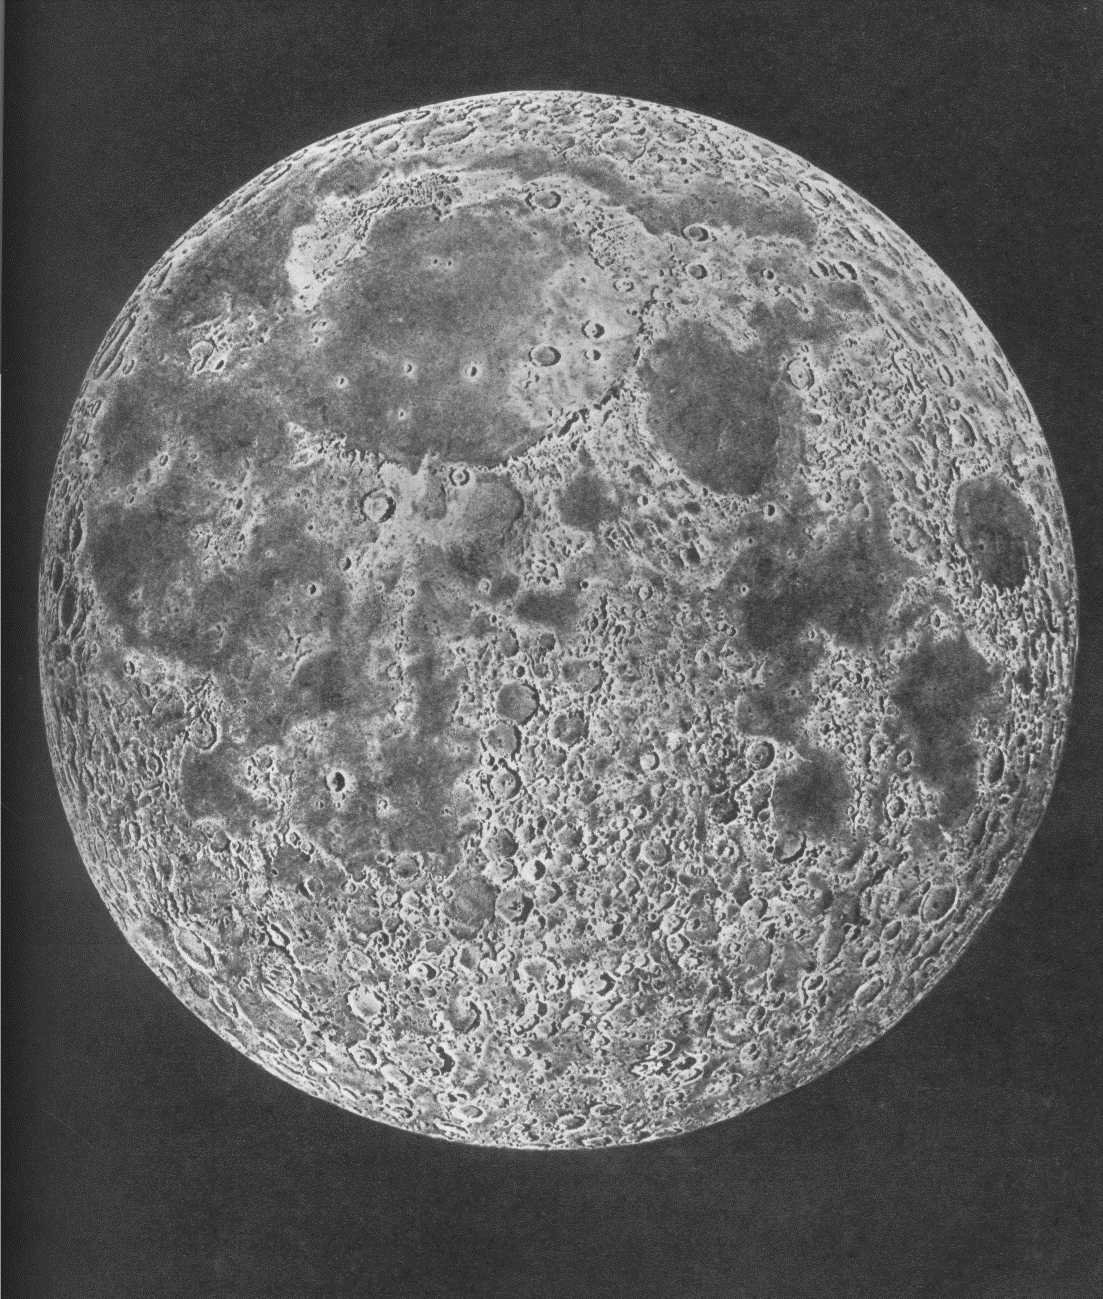 Изображение обратной стороны луны. Невидимая сторона Луны. Обратная сторона Луны. Луна снимок обратной стороны Луны. Обратная Невидимая сторона Луны.